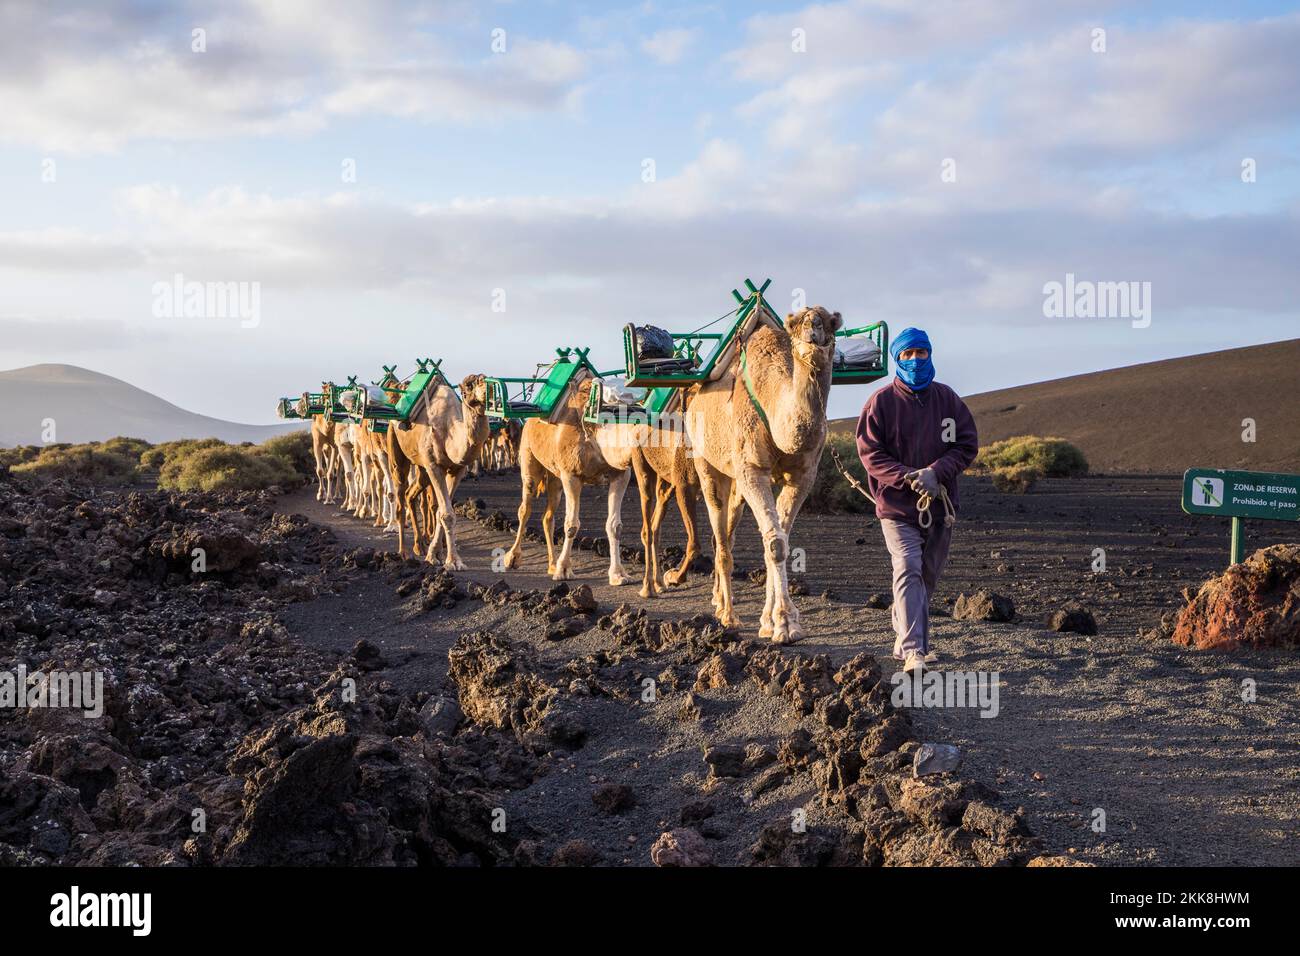 Yaiza, Spagna - 14 marzo 2017: L'autista del cammello guida la carovana del cammello attraverso l'area vulcanica del parco nazionale di timanfaya a Lanzarote. Foto Stock